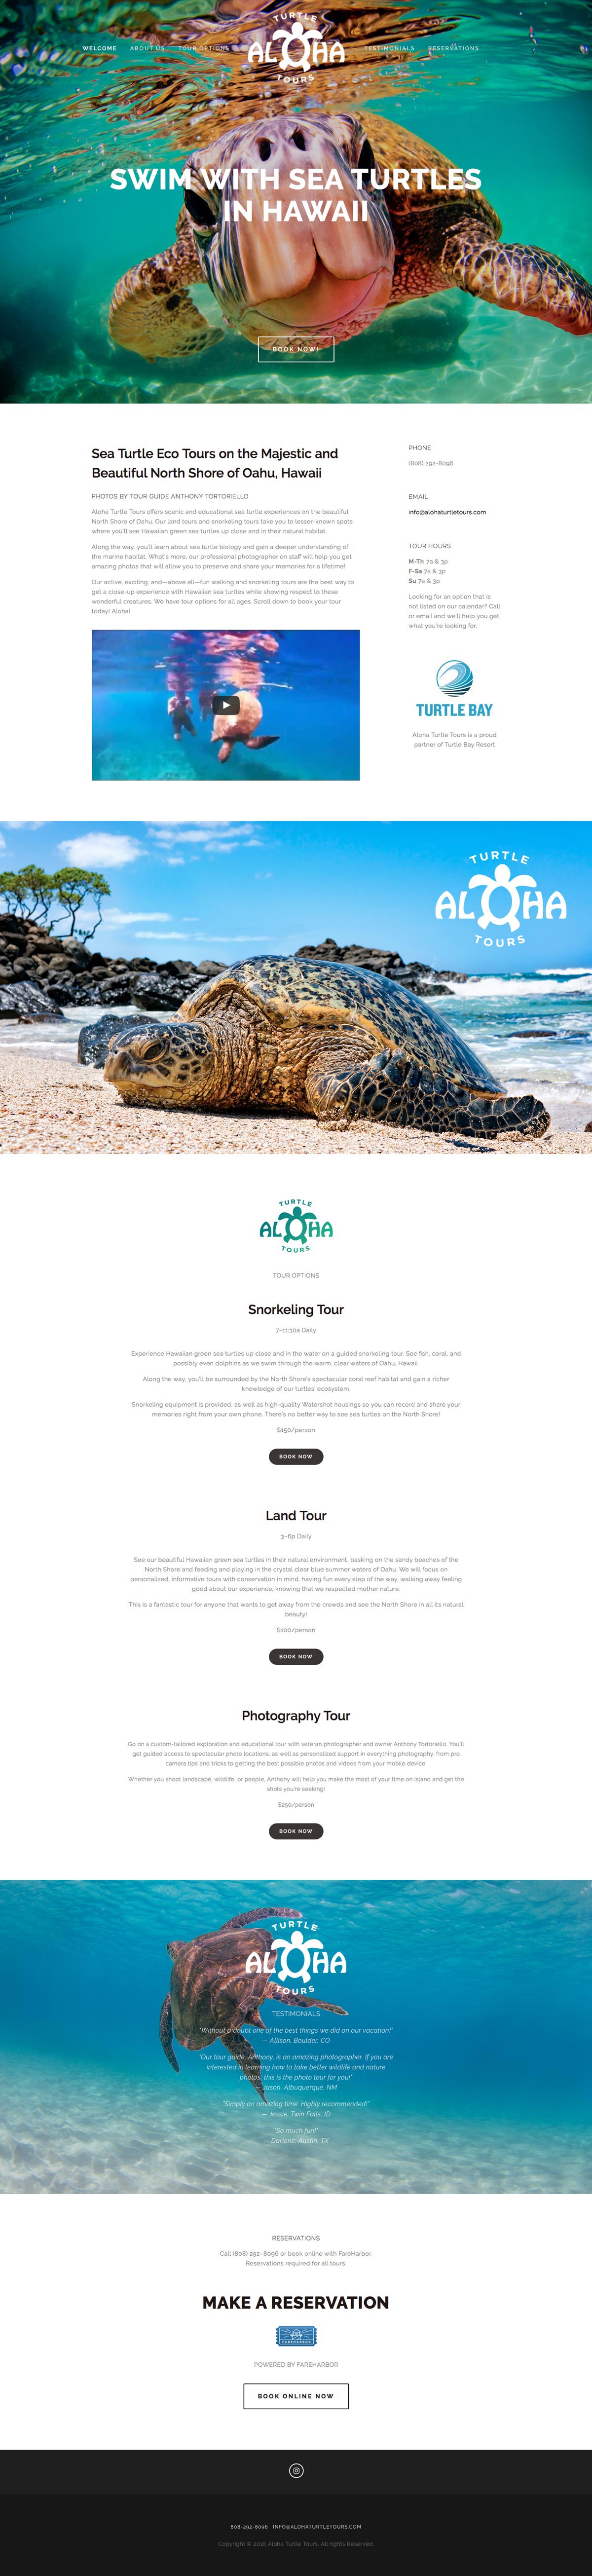 Aloha Turtle Tours home page screenshot 2016-07